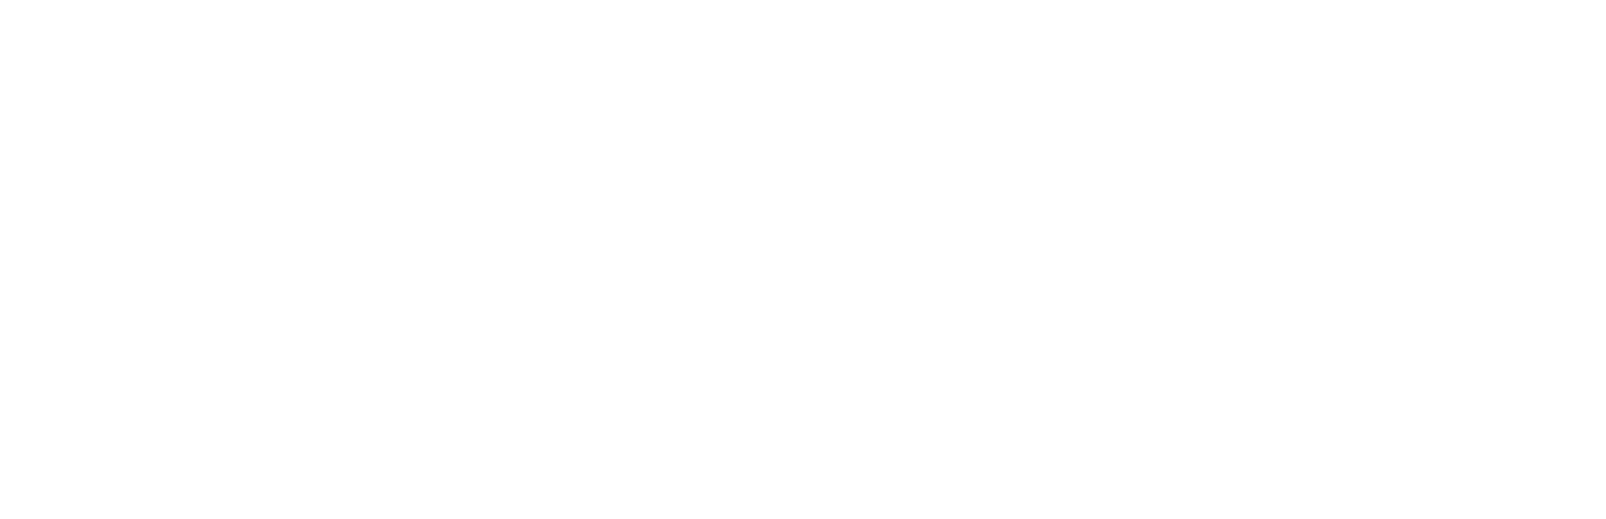 Zebra Technologies logo large for dark backgrounds (transparent PNG)